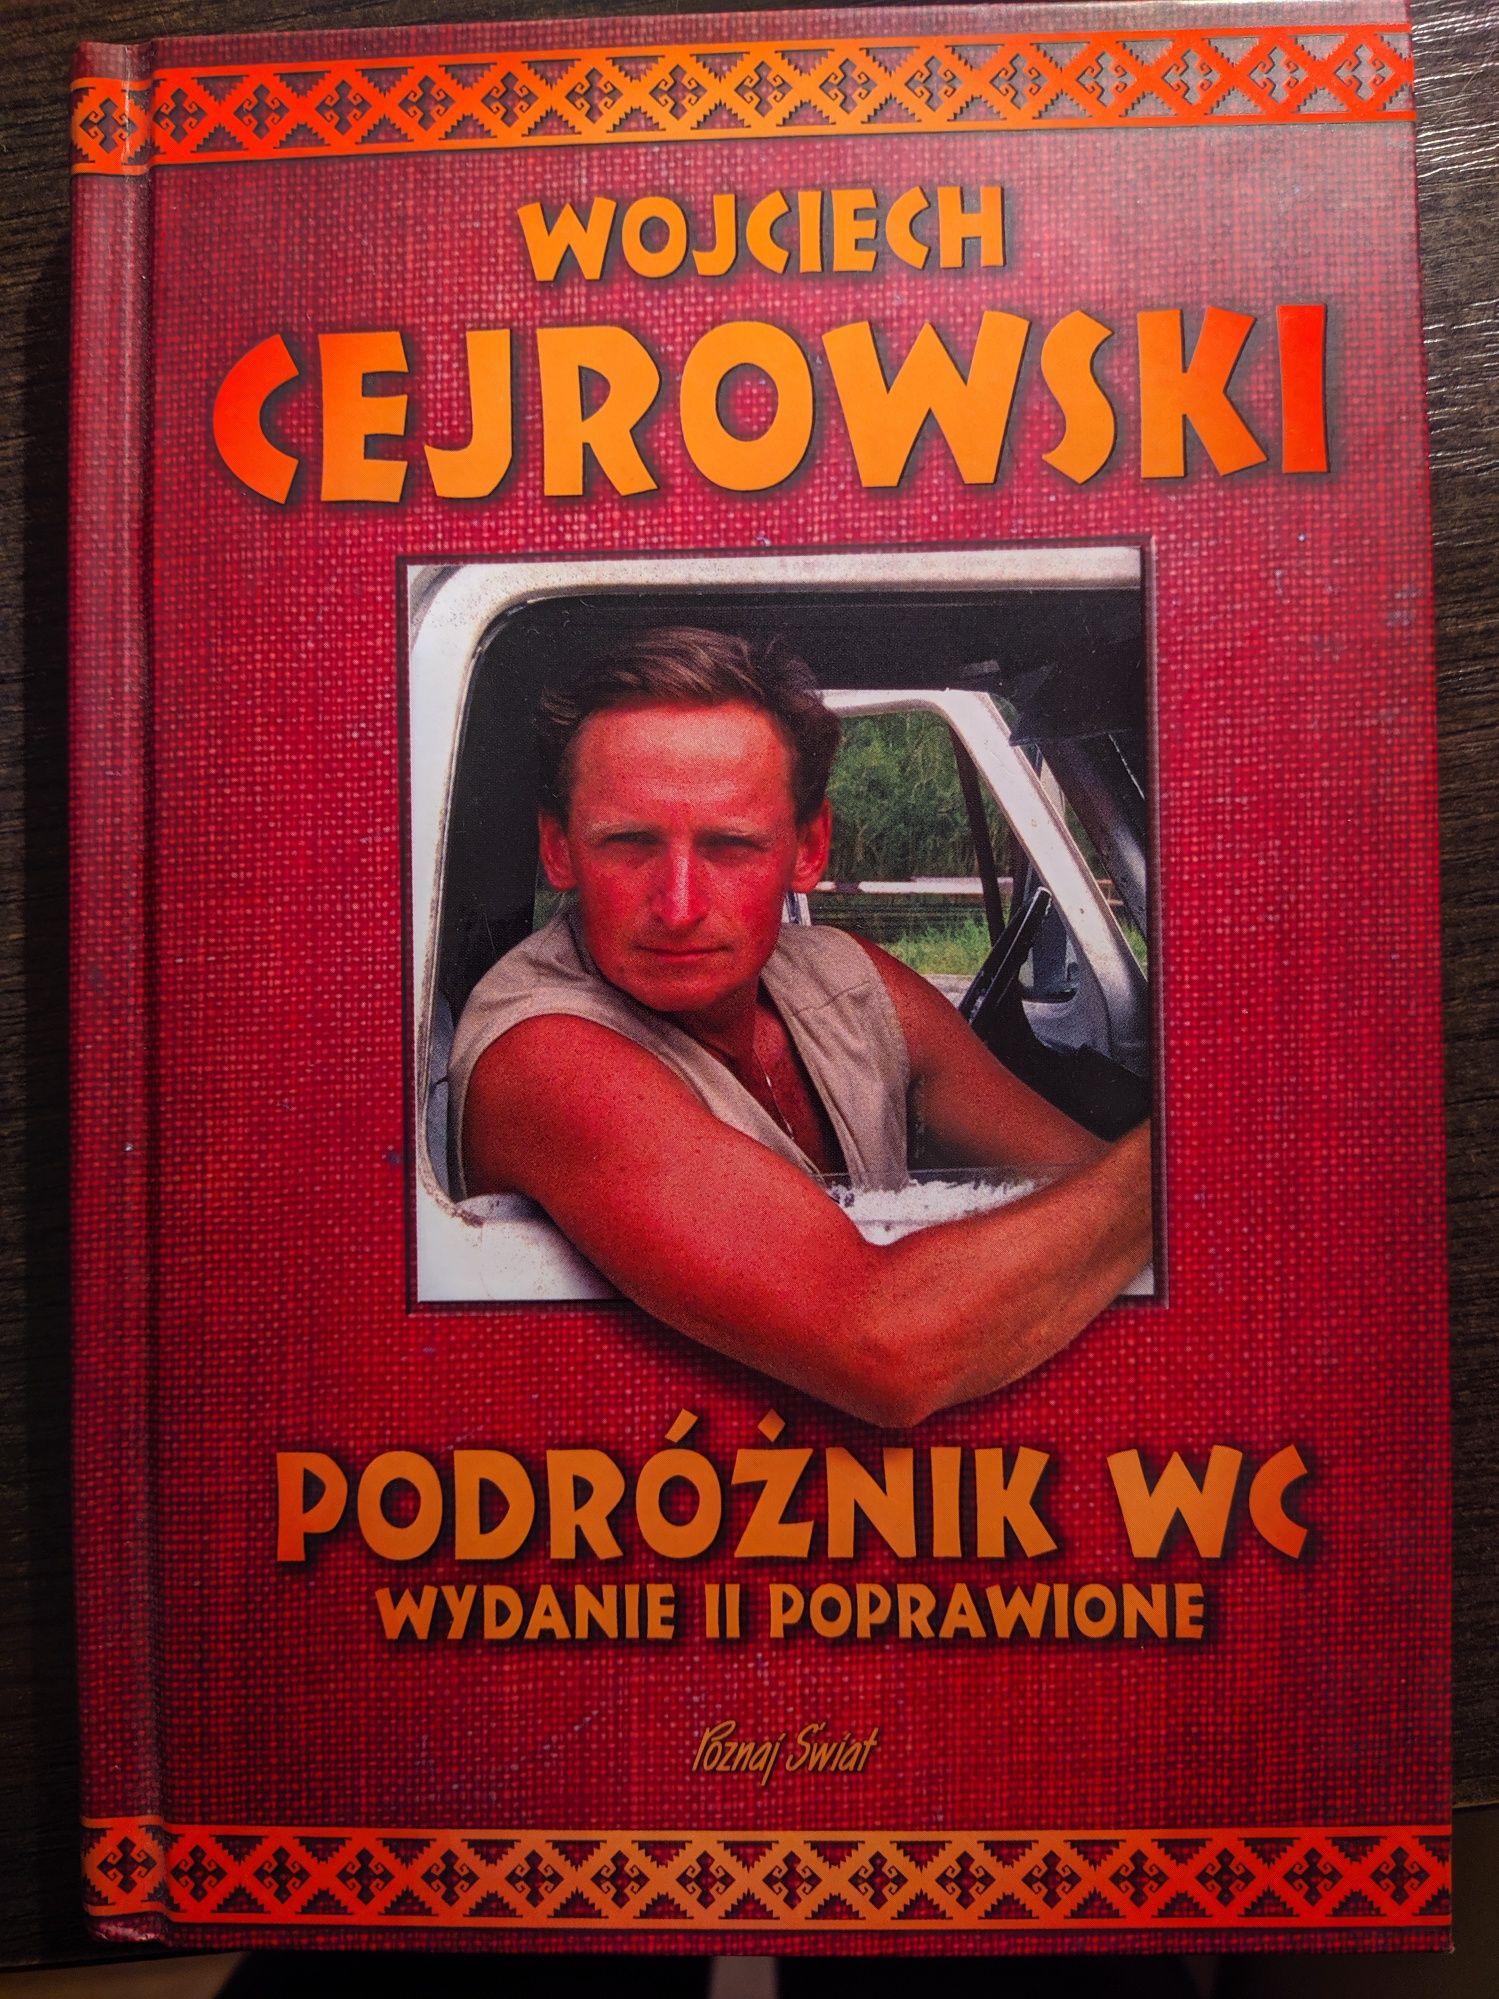 Wojciech Cejrowski Podróżnik WC